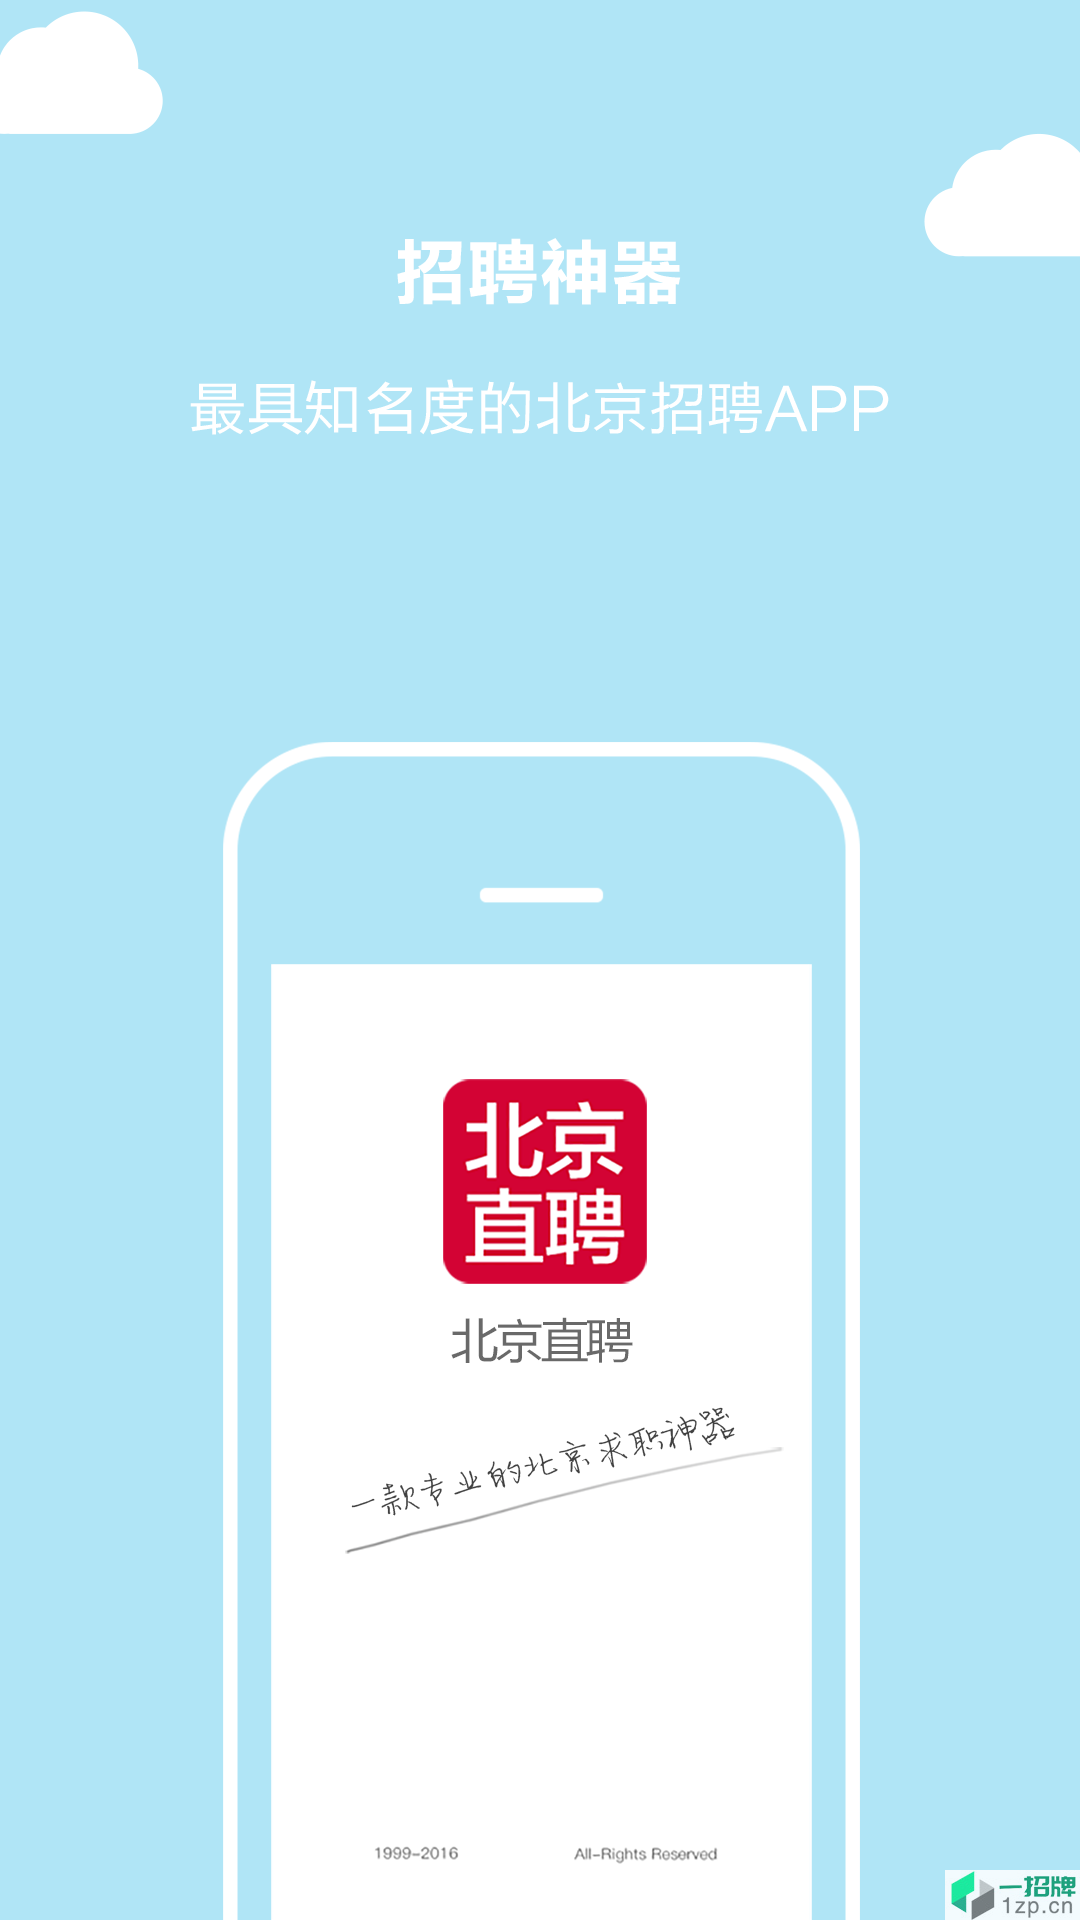 北京直聘app下载_北京直聘app最新版免费下载